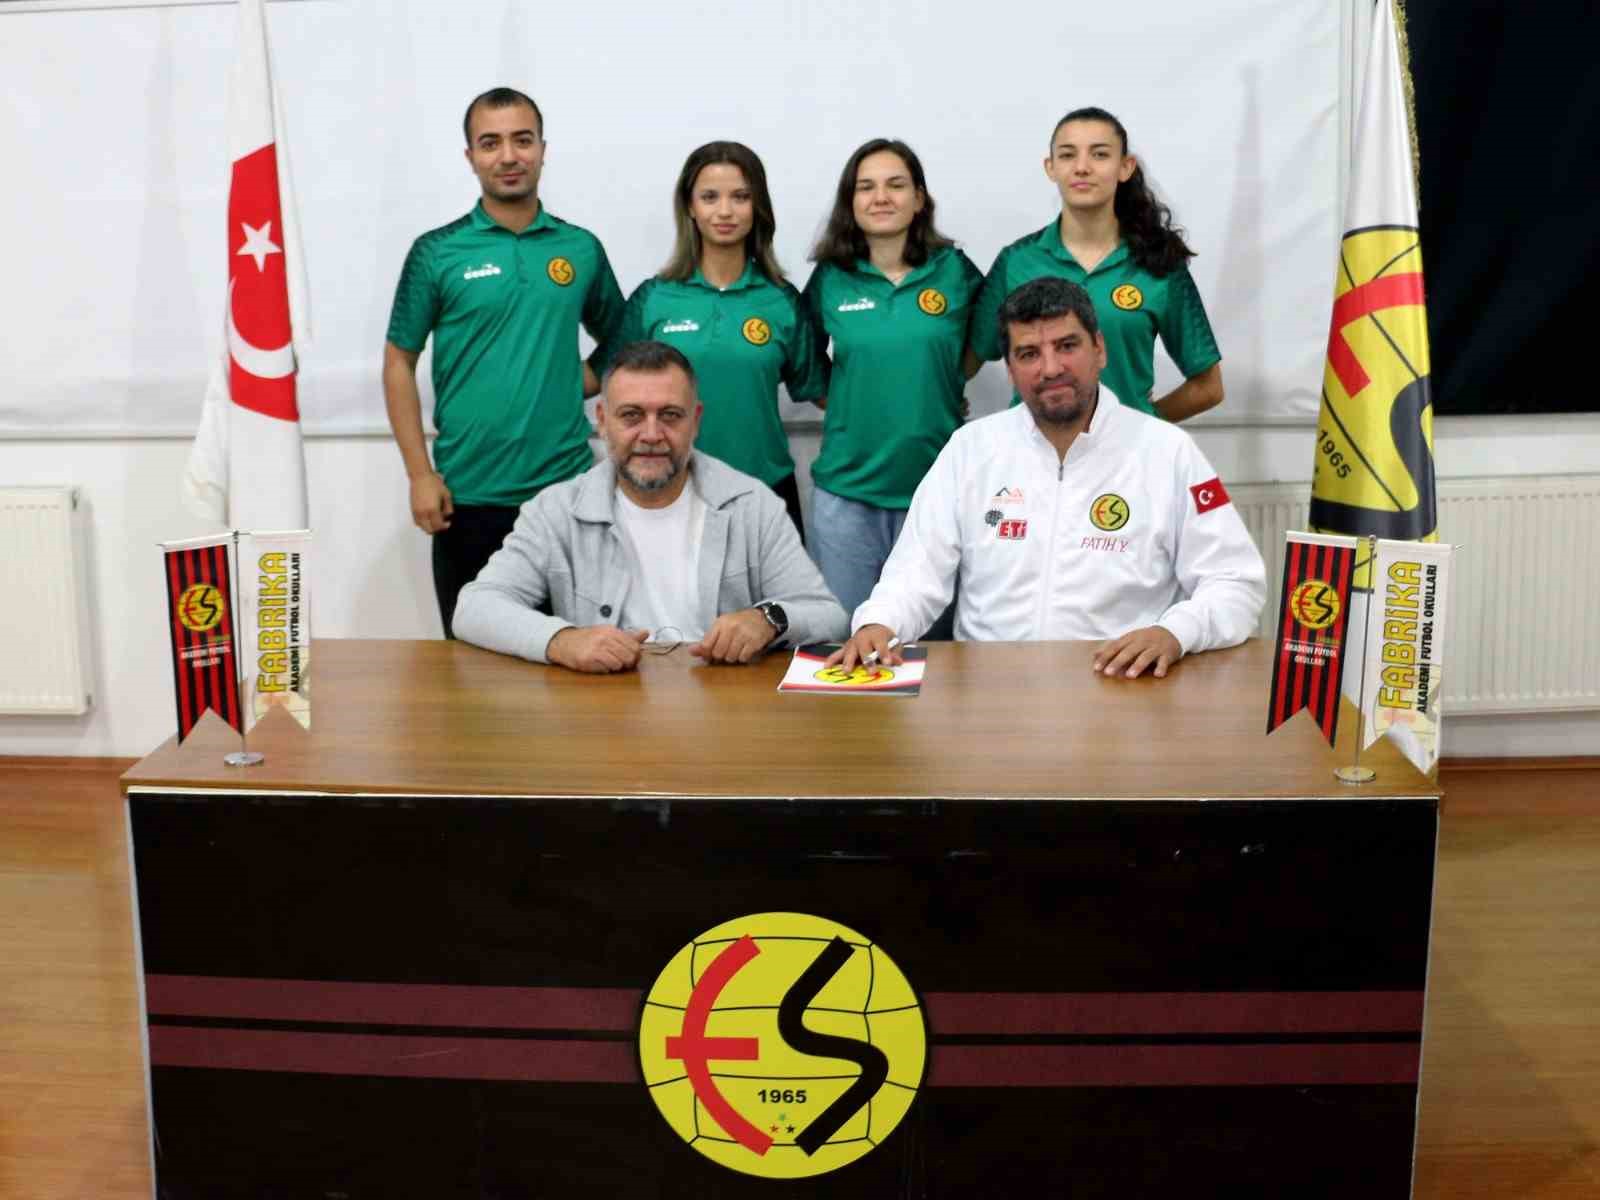 Eskişehirspor Fabrika Futbol Gelişim Akademisi’ne yeni antrenör